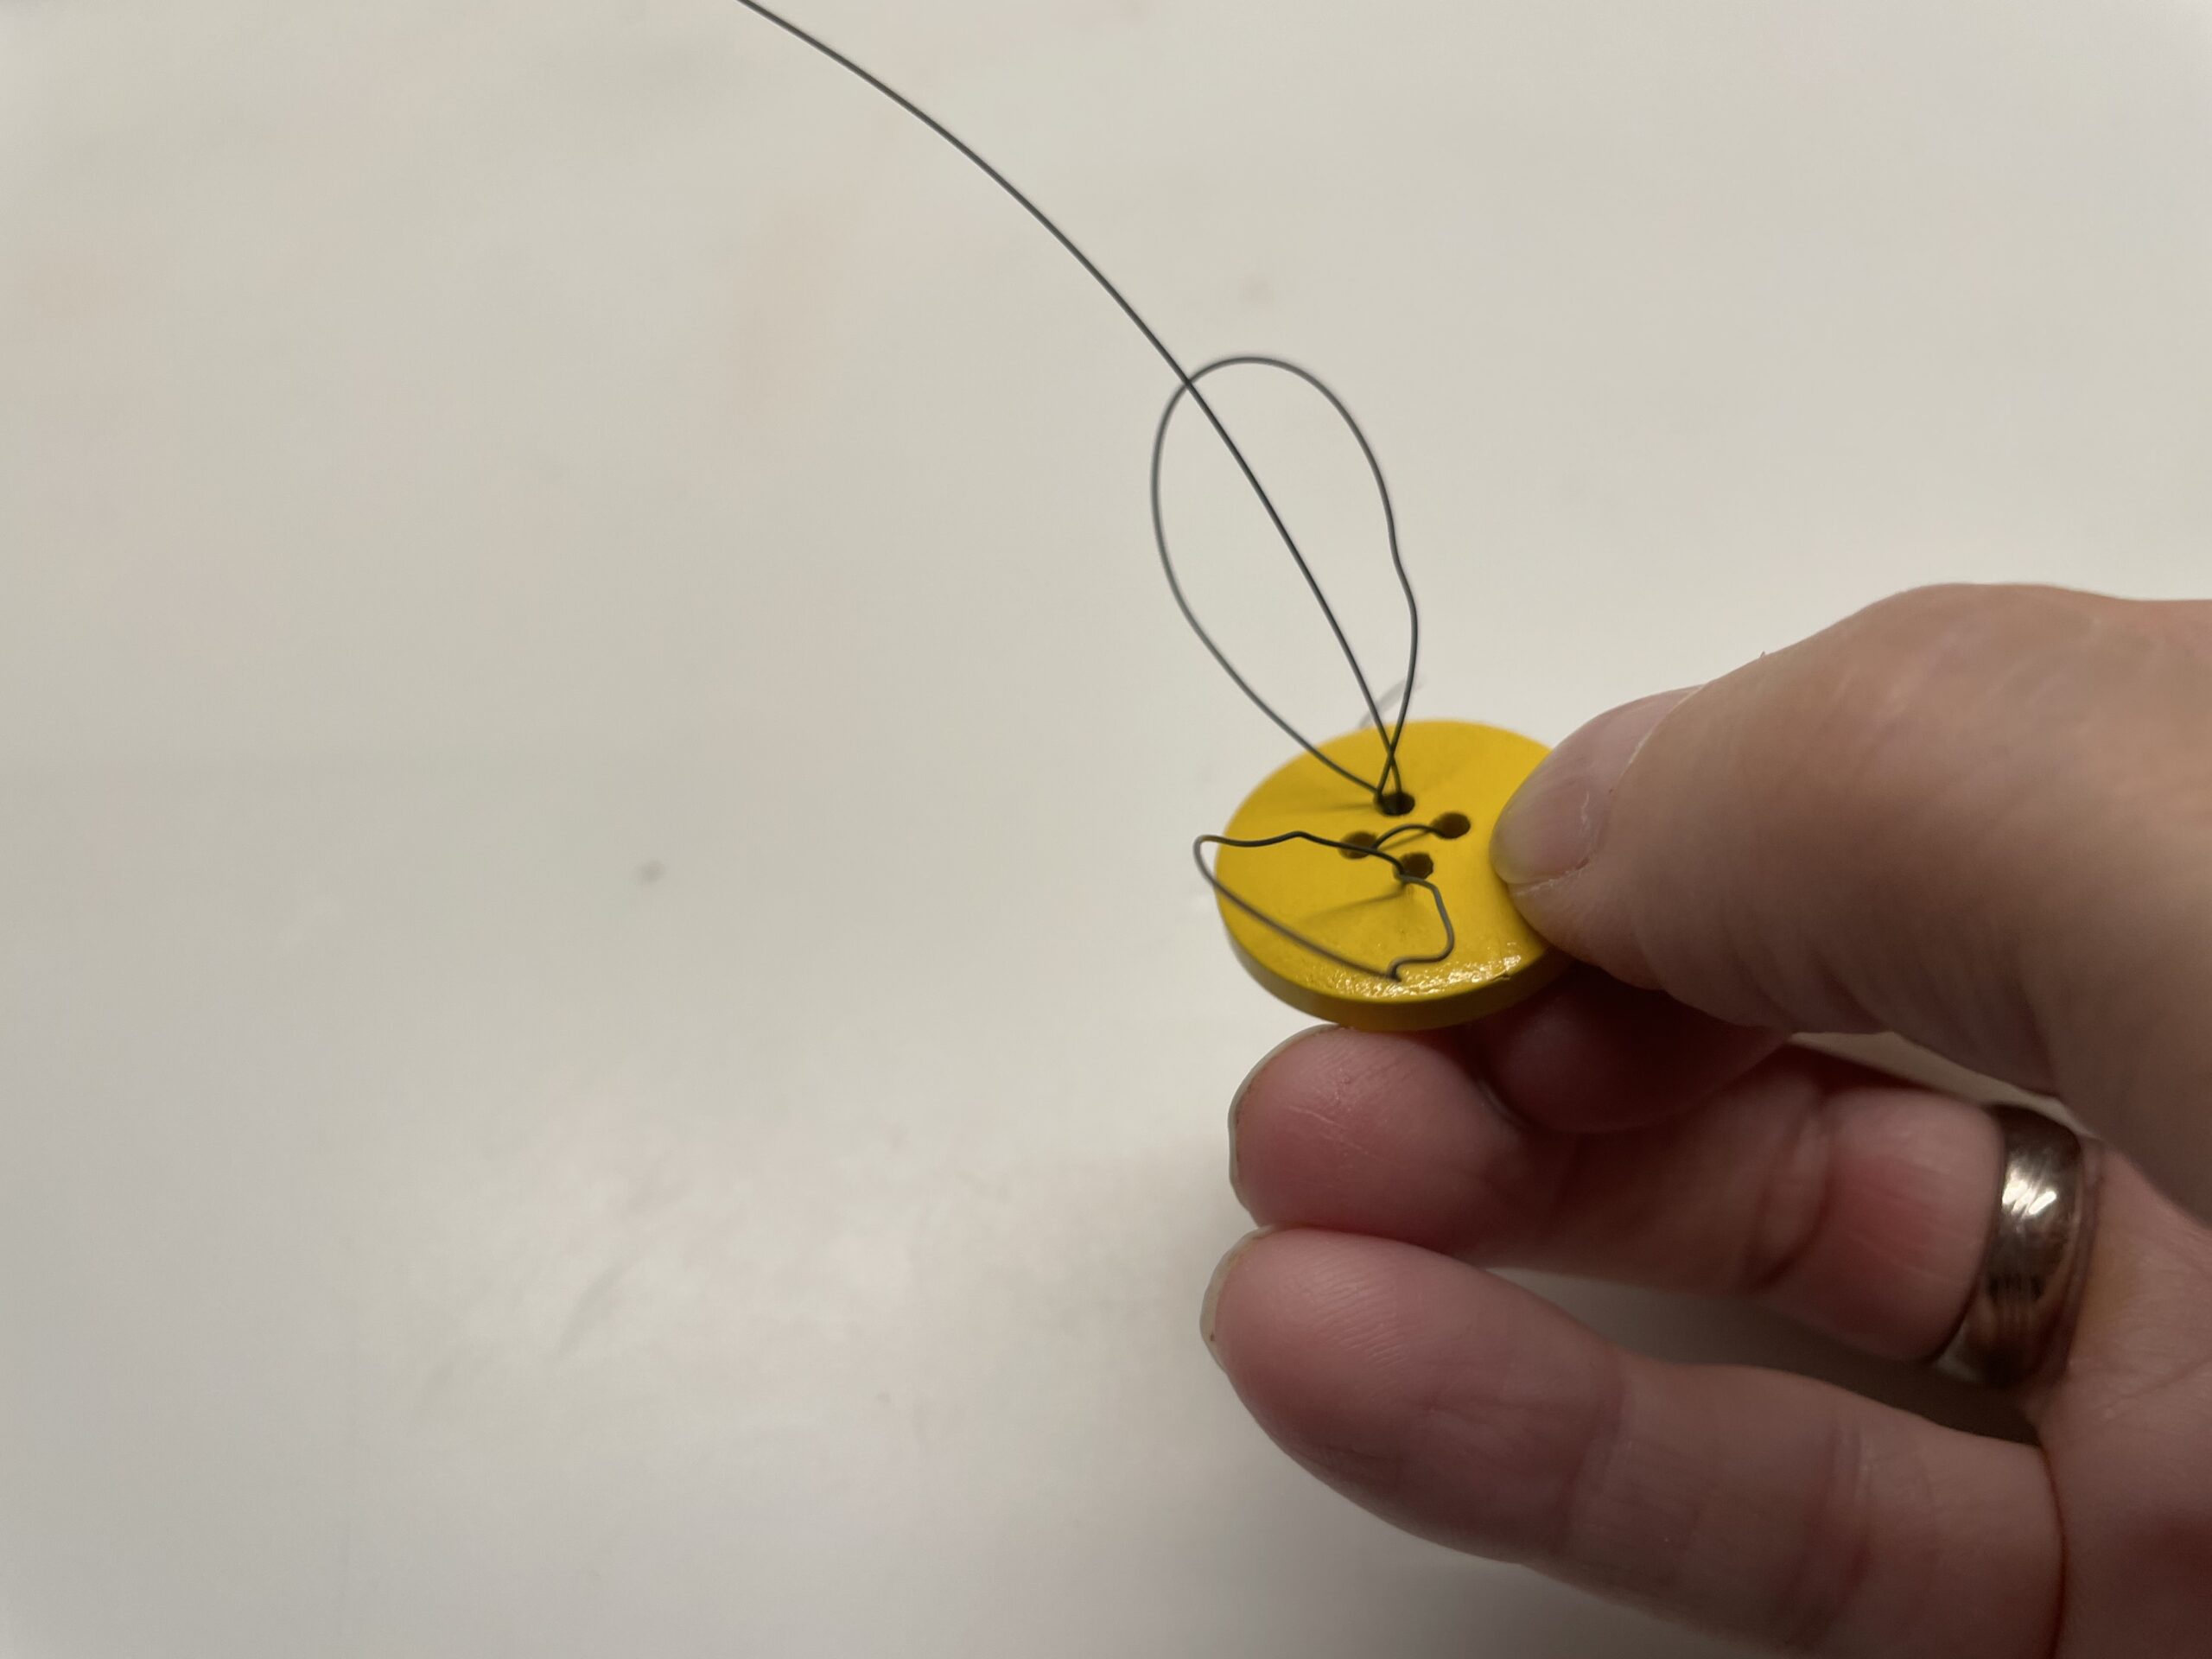 Bild zum Schritt 11 für das Bastel- und DIY-Abenteuer für Kinder: 'Greift den entstandenen Flügel mit einer Hand und dreht ihn...'